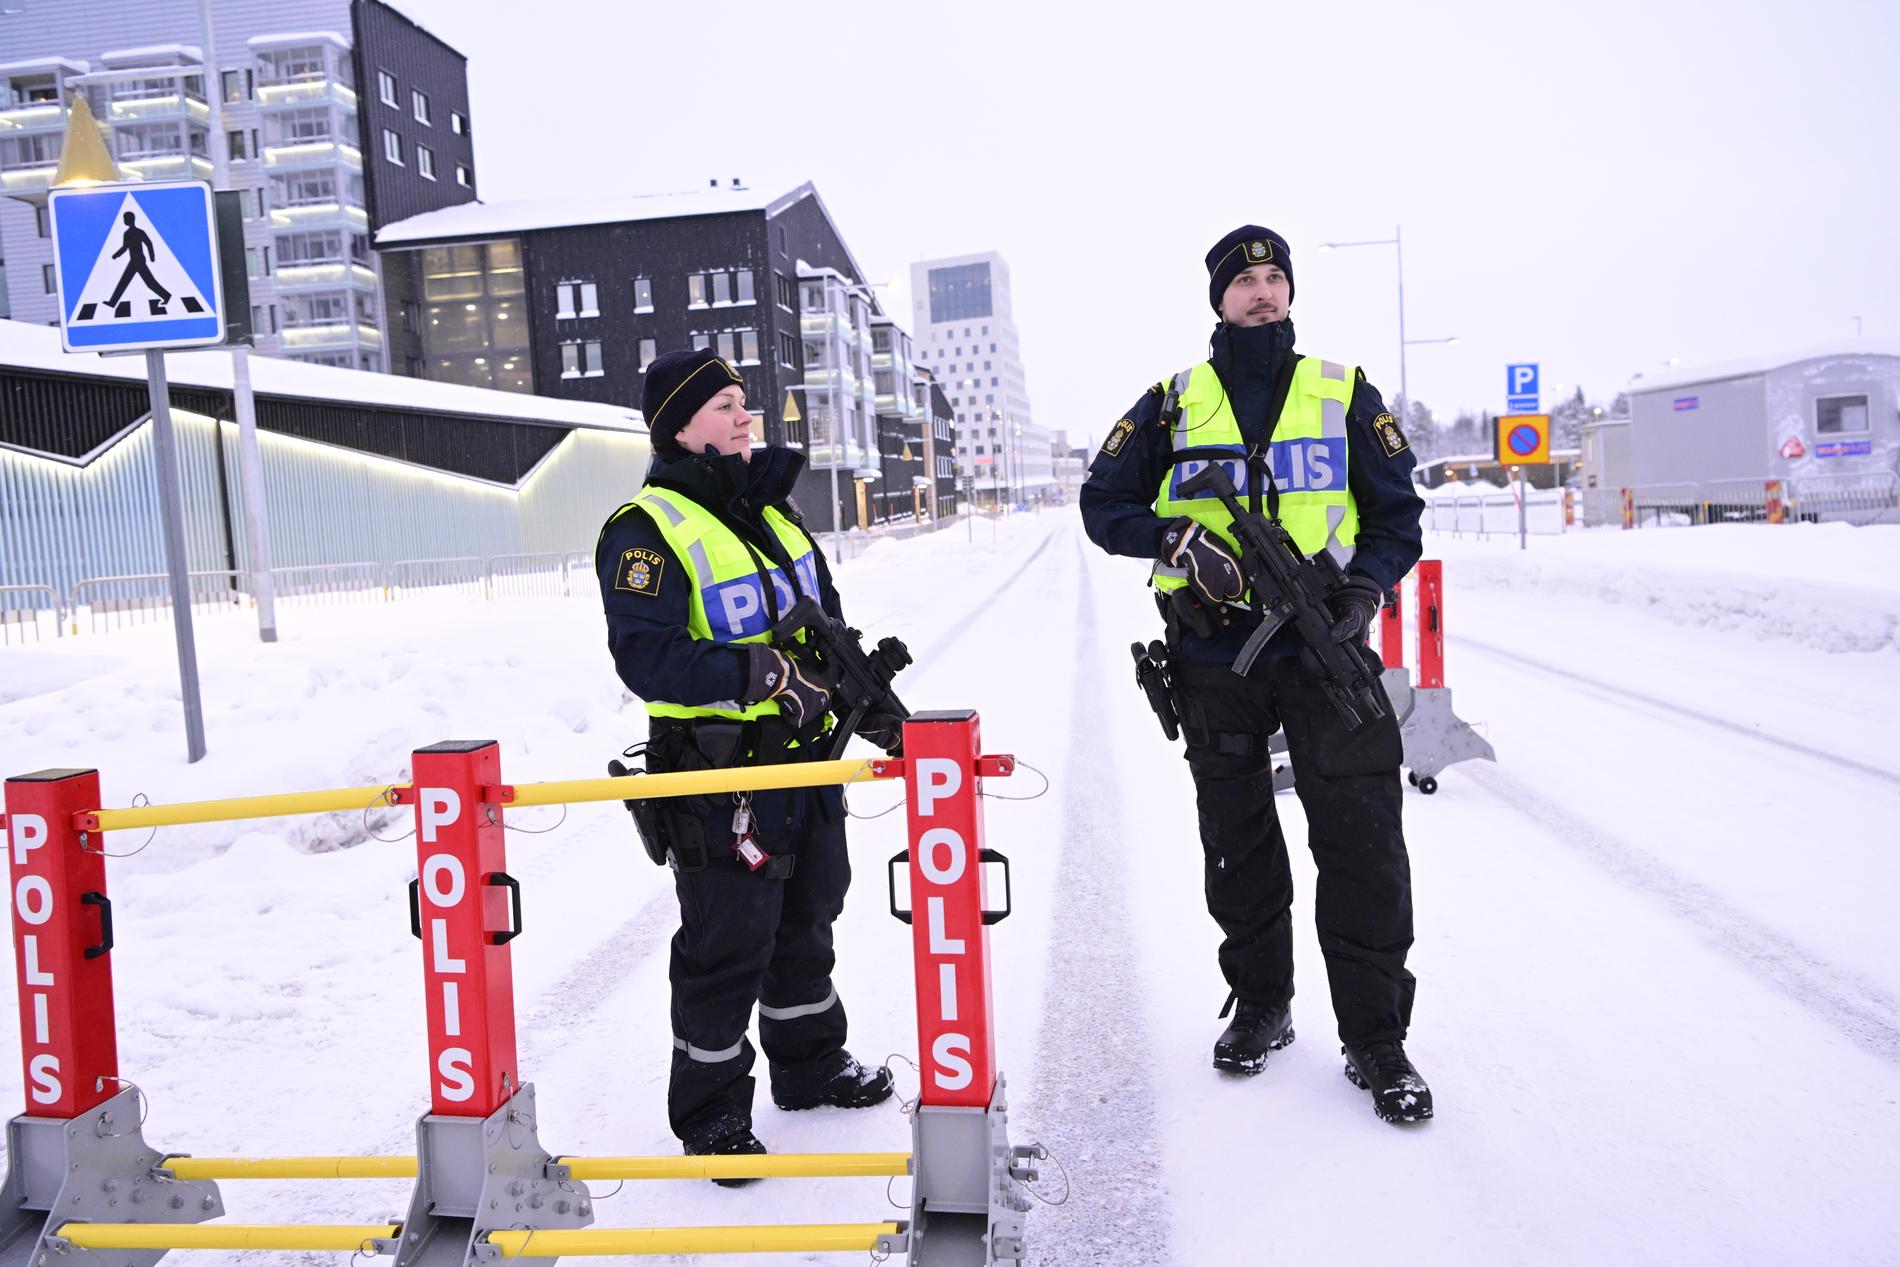 Sveriges EU-ordförandeskap invigs under Europeiska kommissionens besök i Kiruna. Polisen med förstärkningsvapen vid avspärrning utanför hotell Scandic Kiruna.